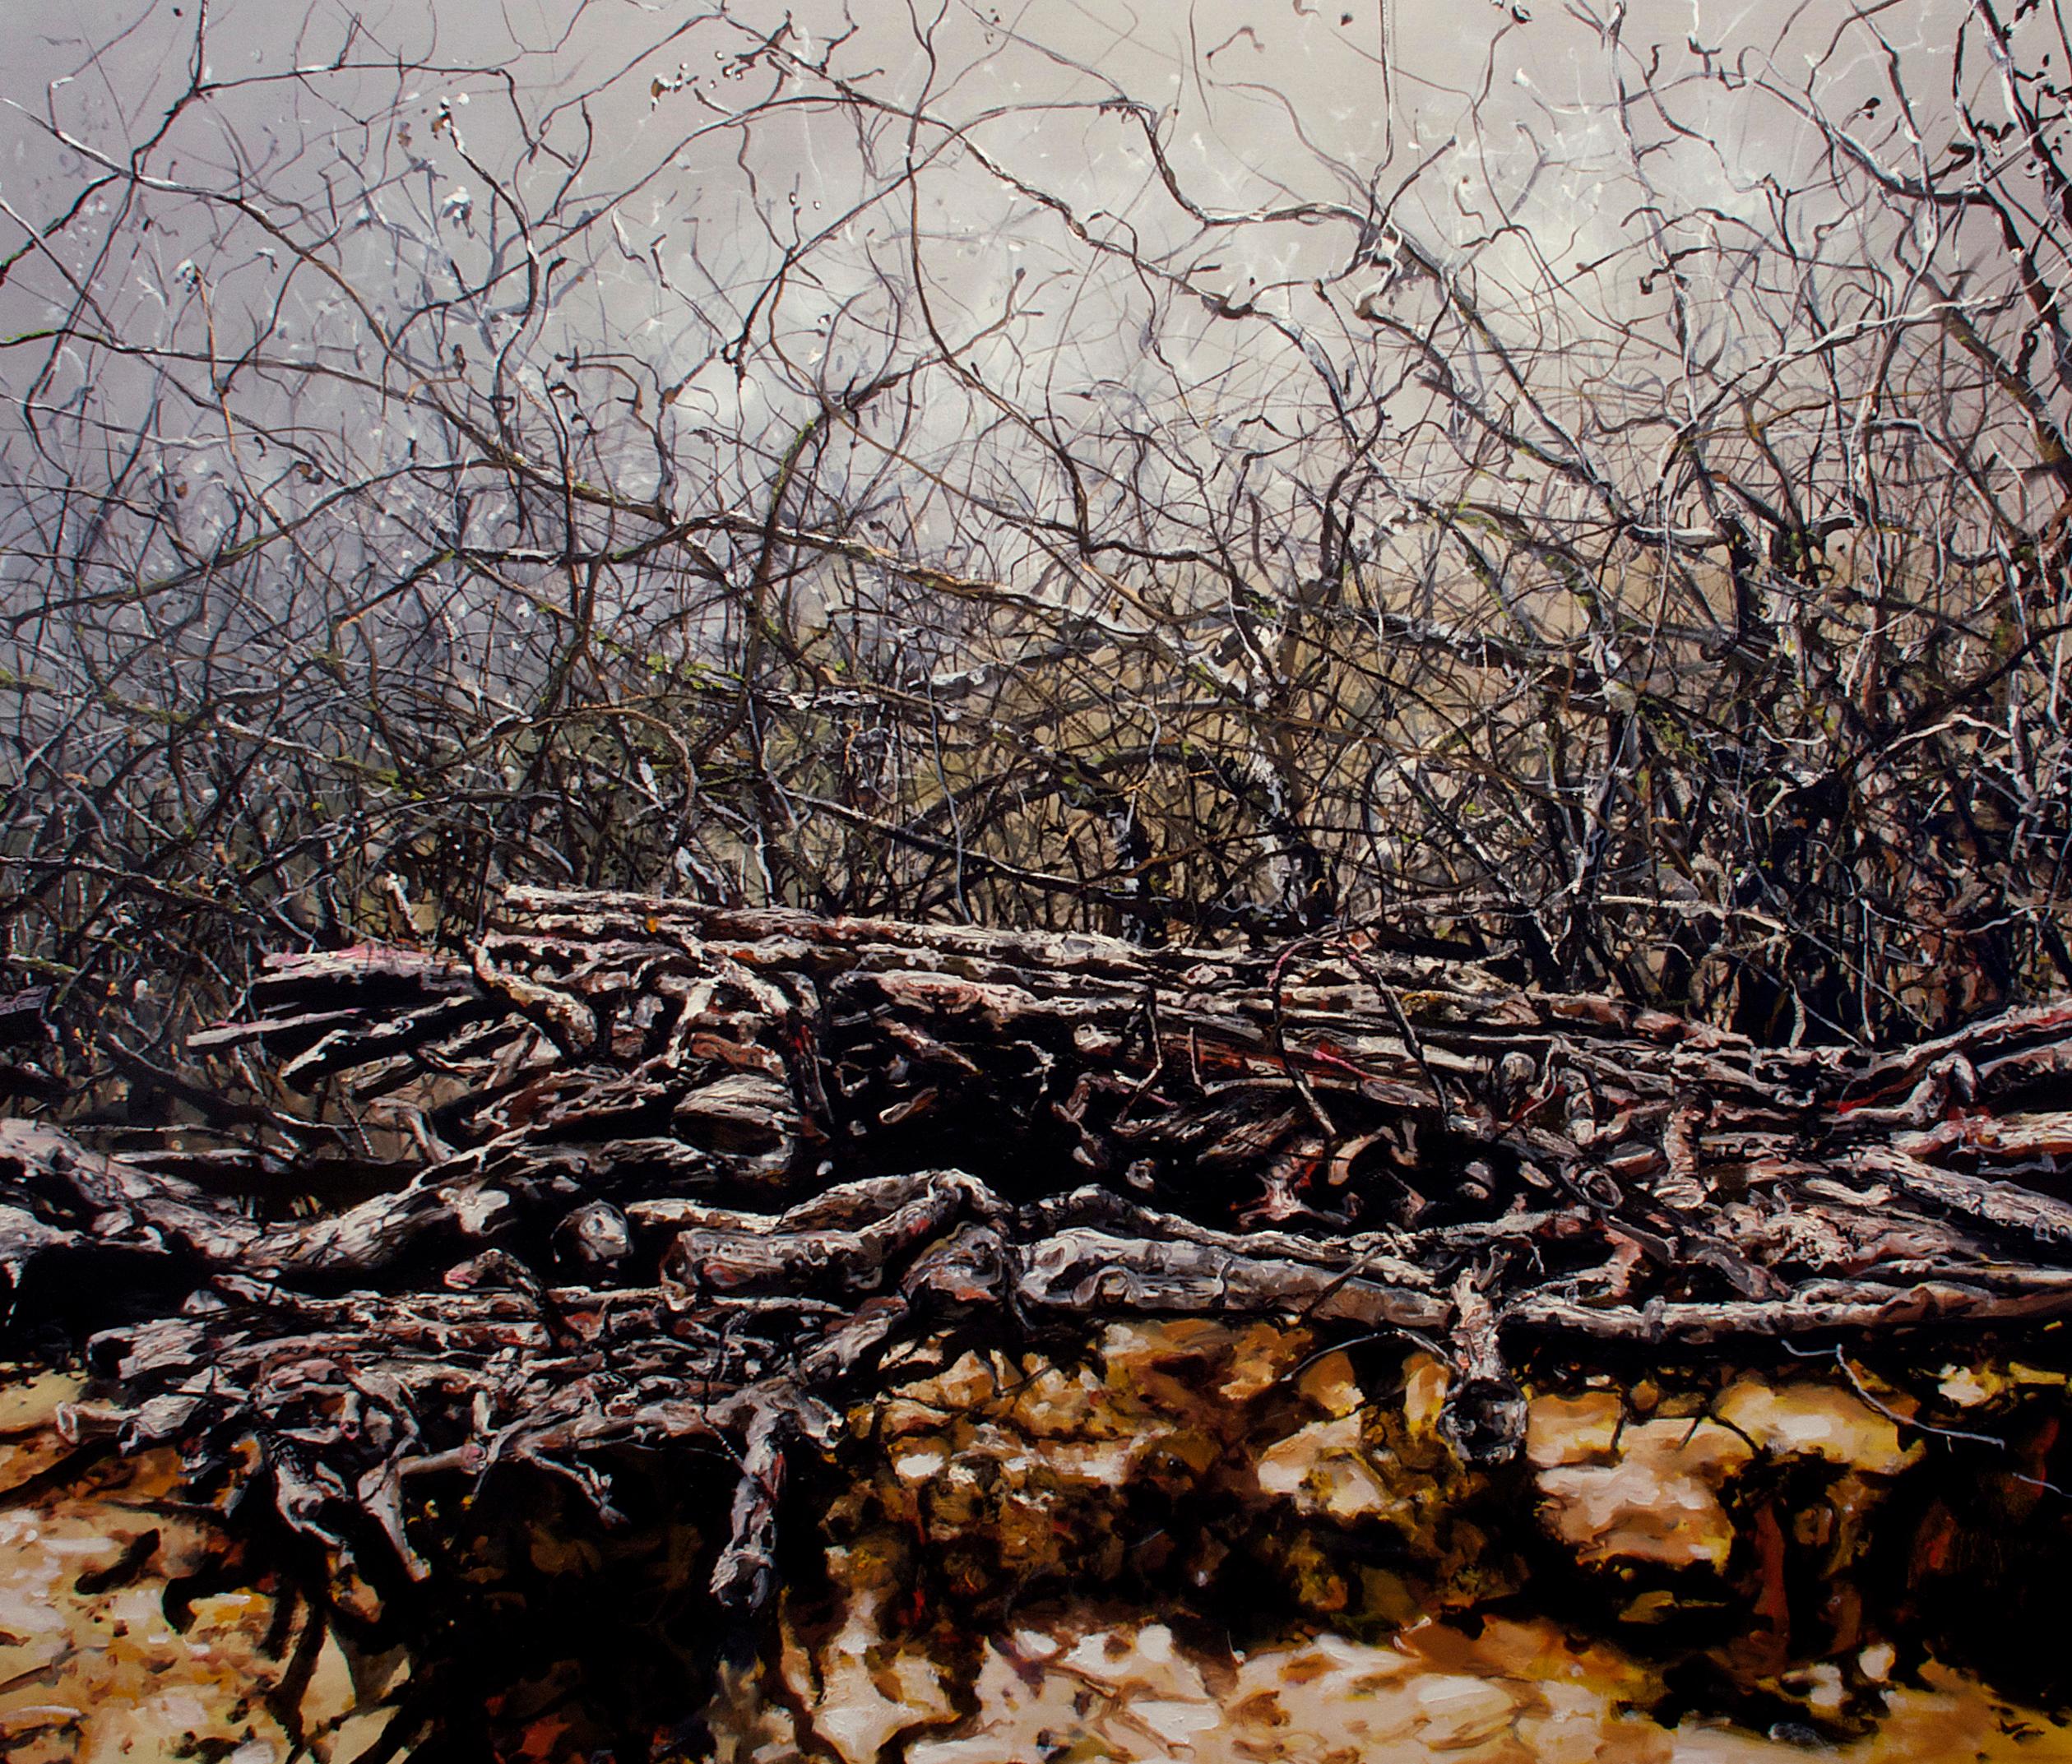 Eric Zener Landscape Painting - "Gentle Surrender" Contemporary Realism / Landscape / Nature / Earth Tones